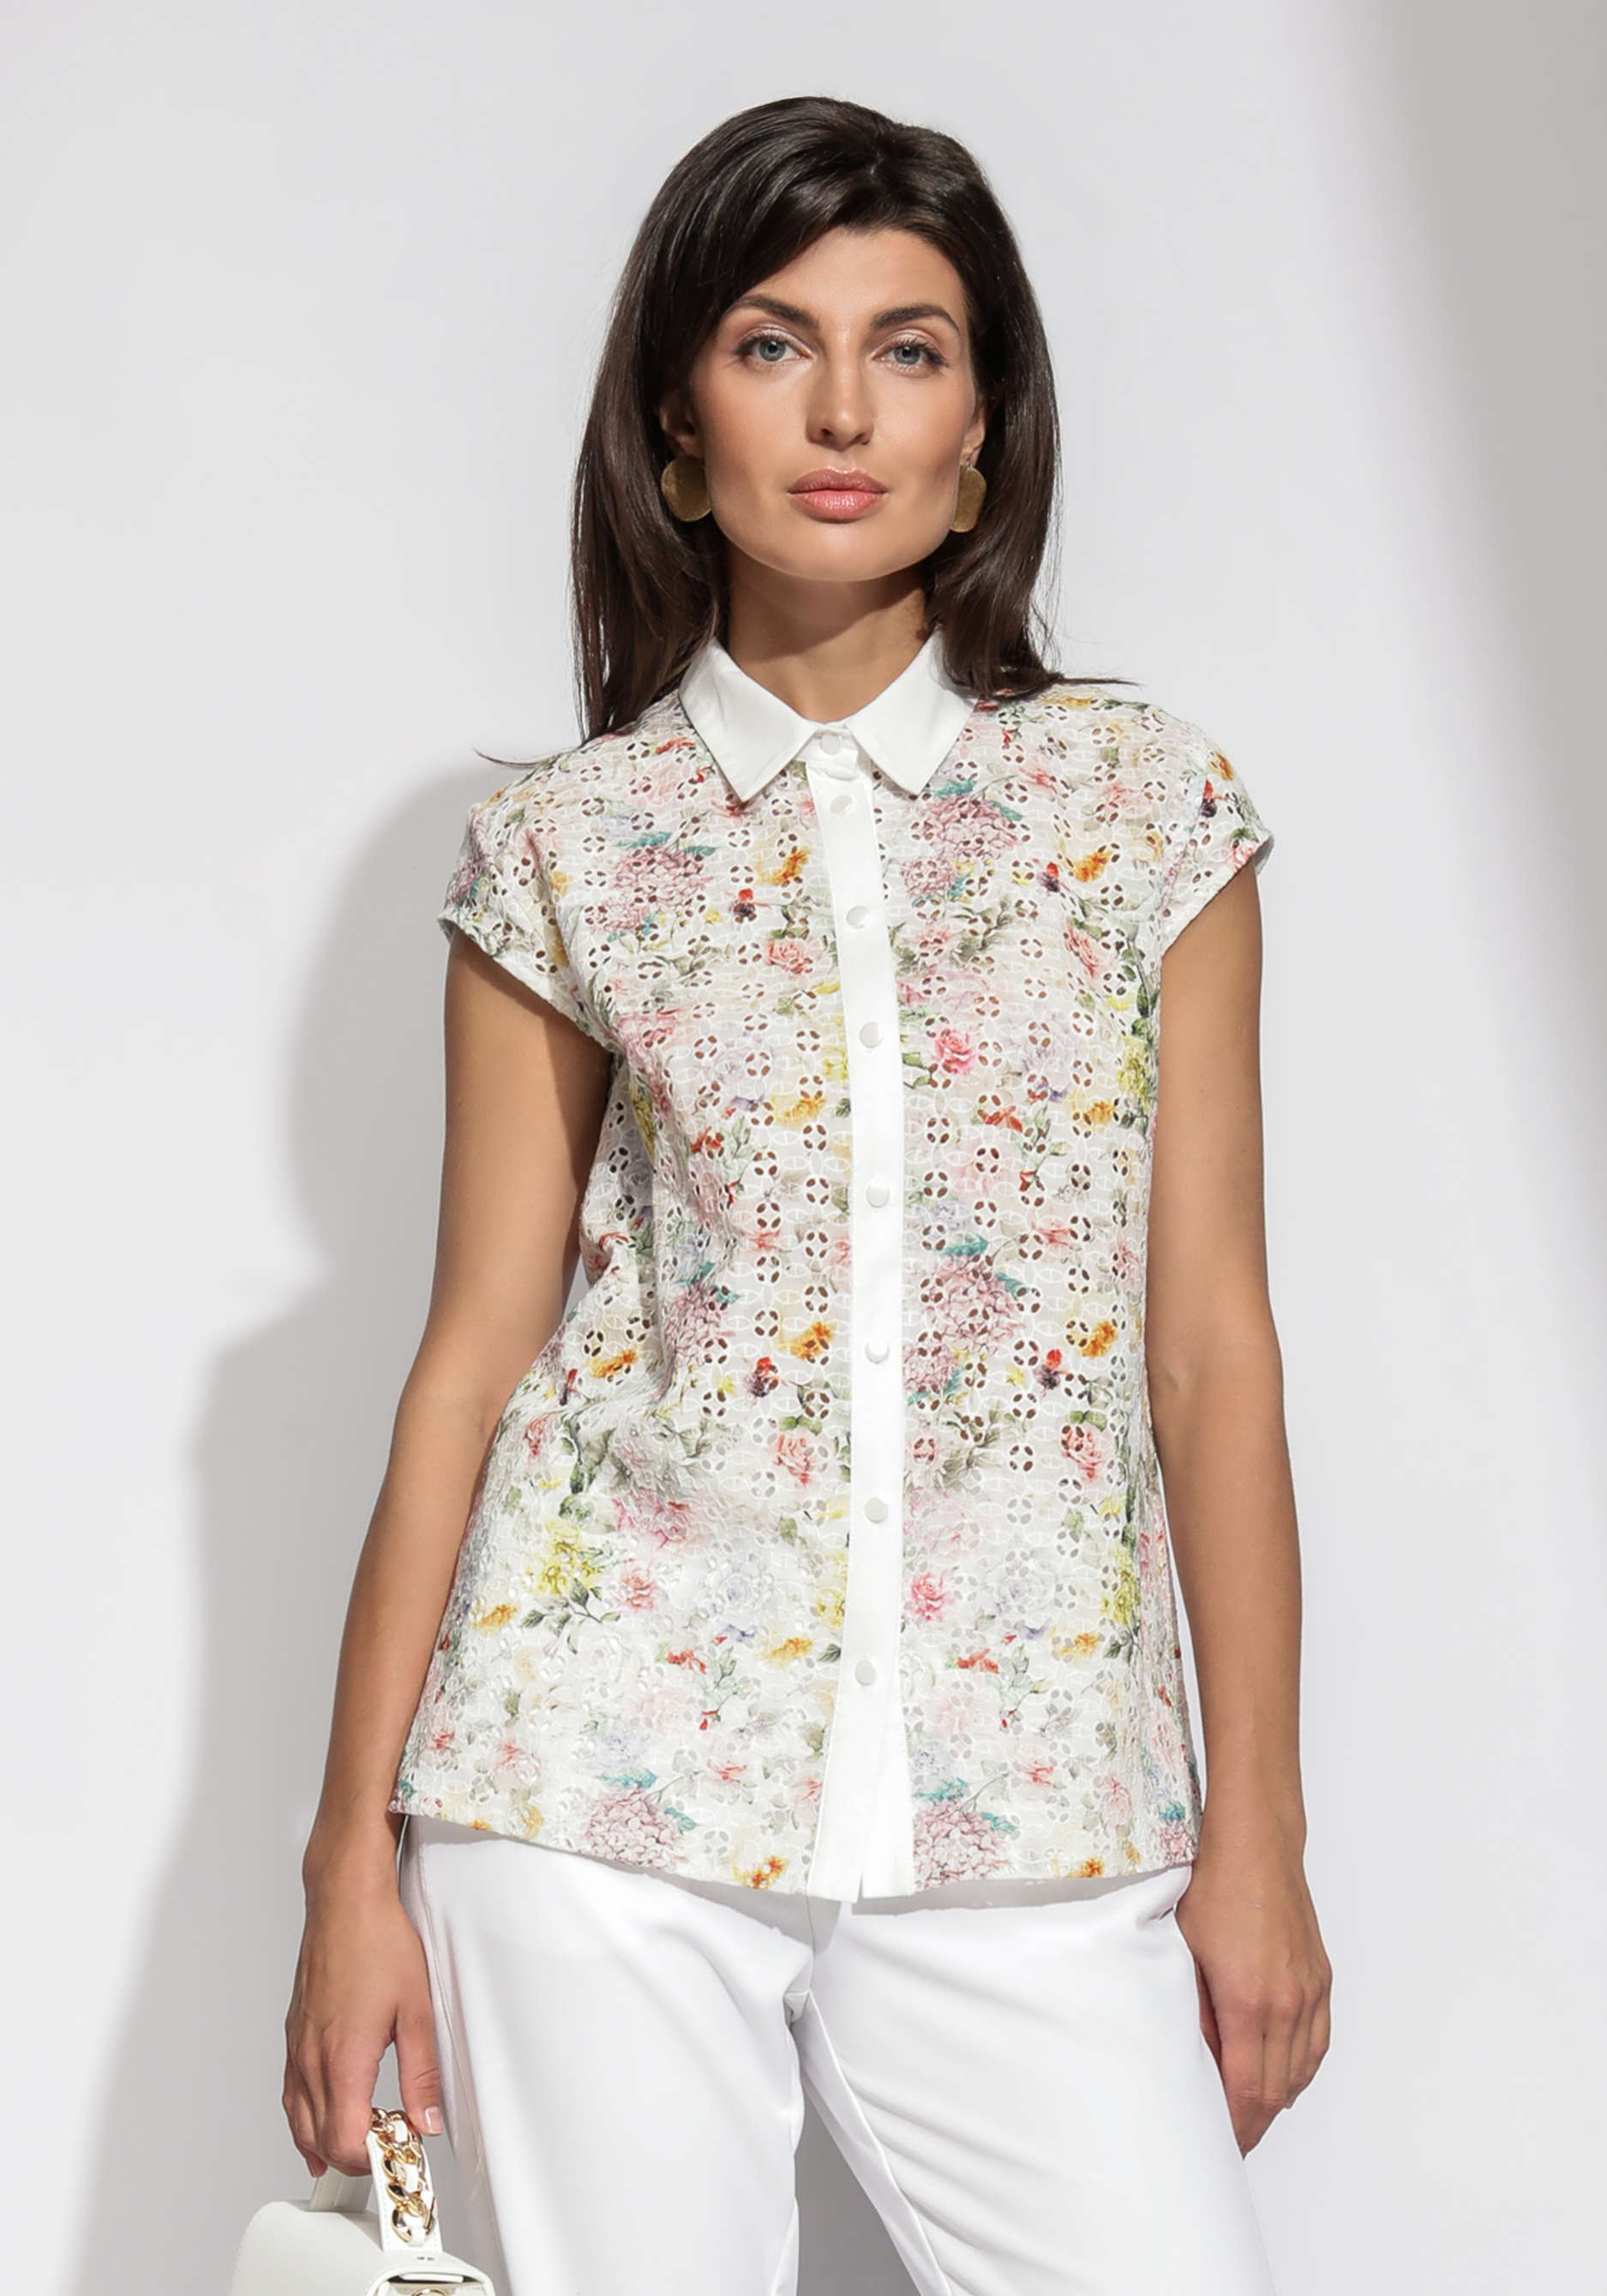 Блузка из шитья с цветочным принтом блузка рубашка